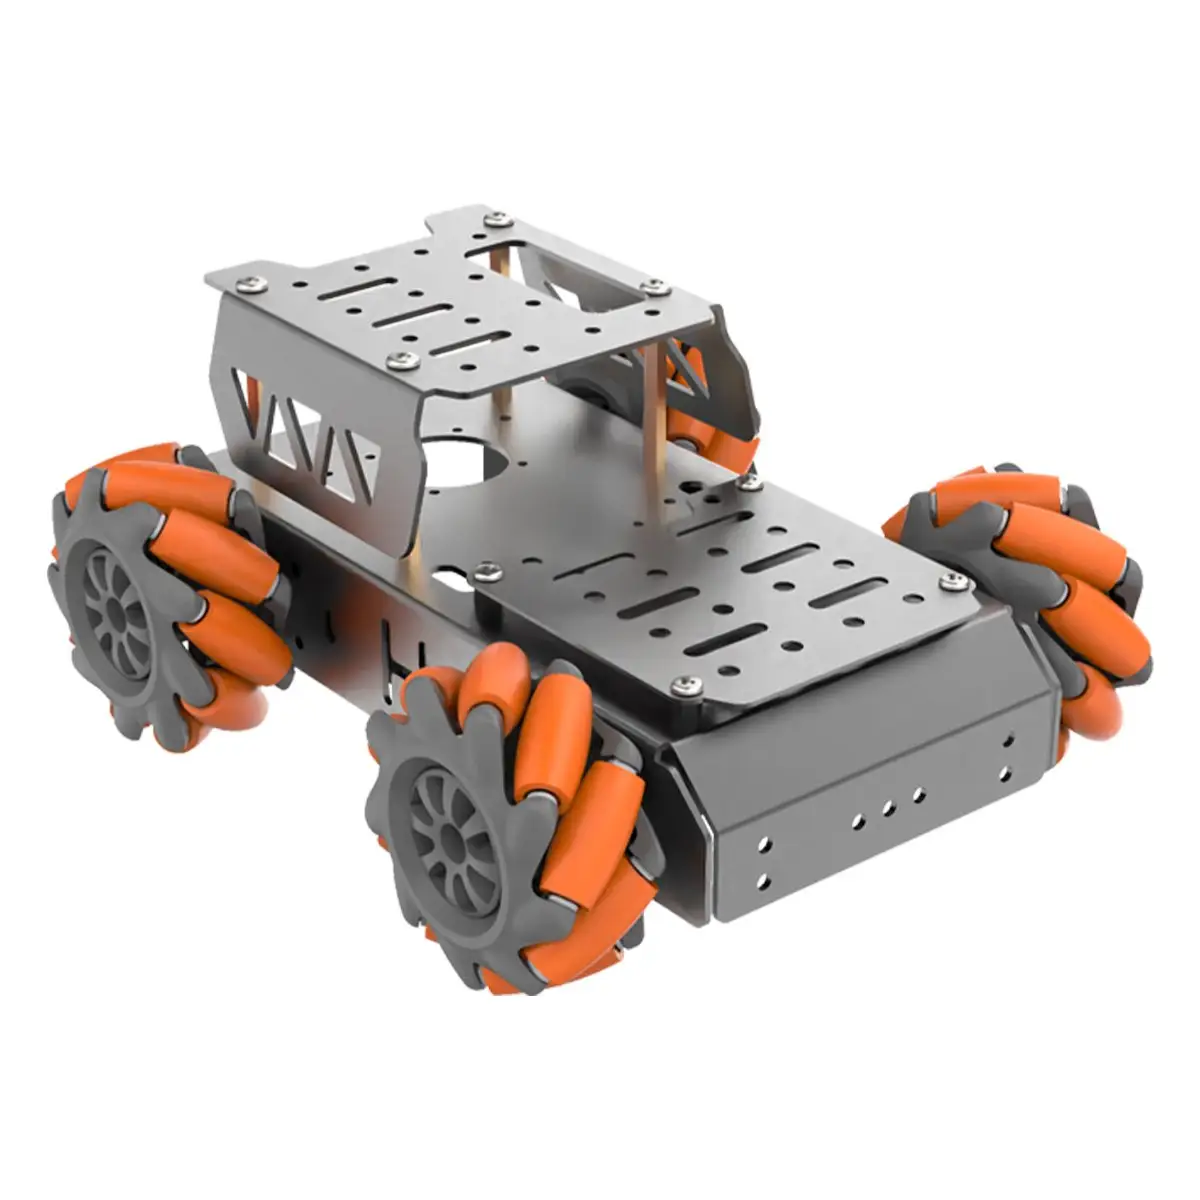 4WD Mecanum, интеллектуальная Автомобильная платформа из сплава колес 360, всенаправленное движение, алюминиевое шасси робота